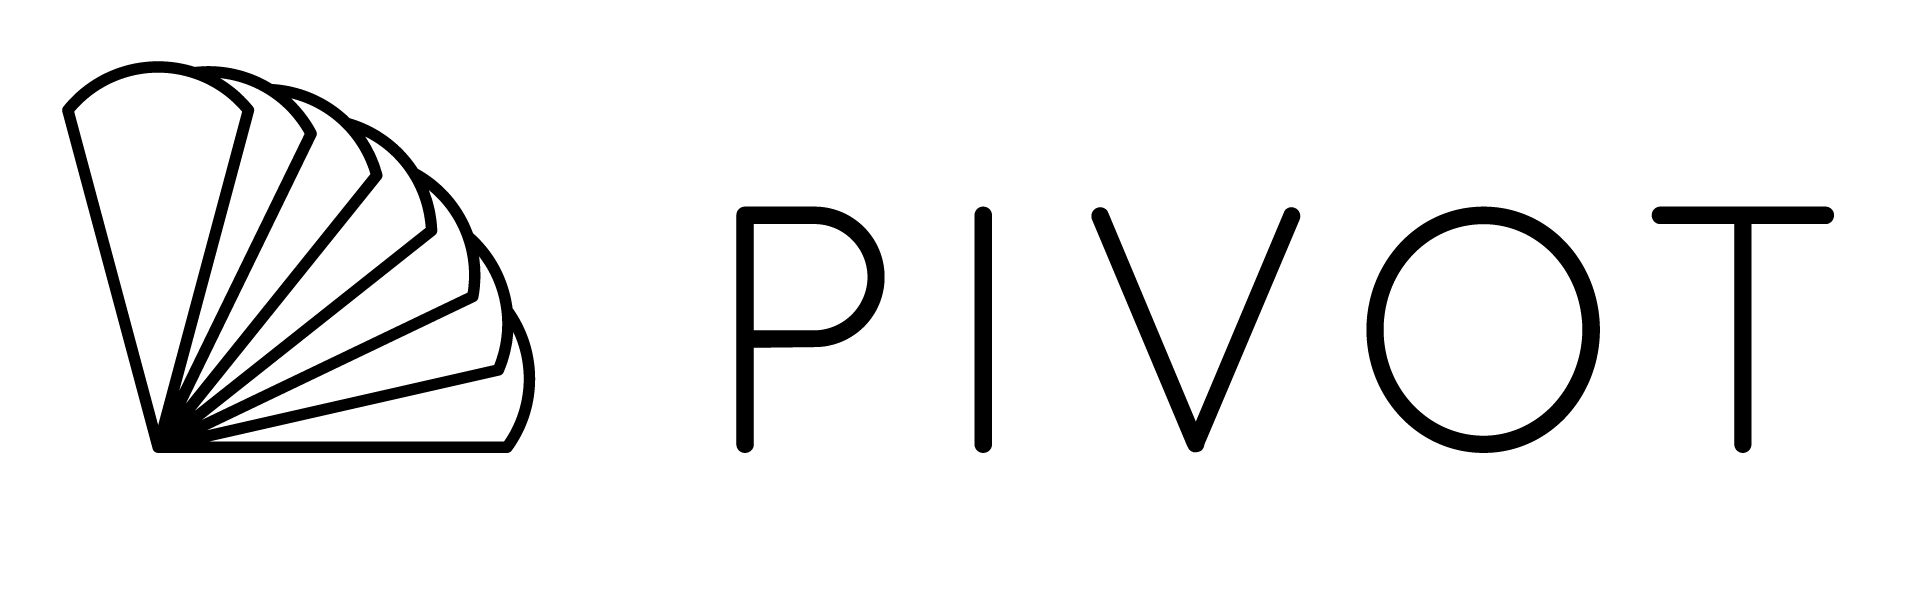 Logo Pivot